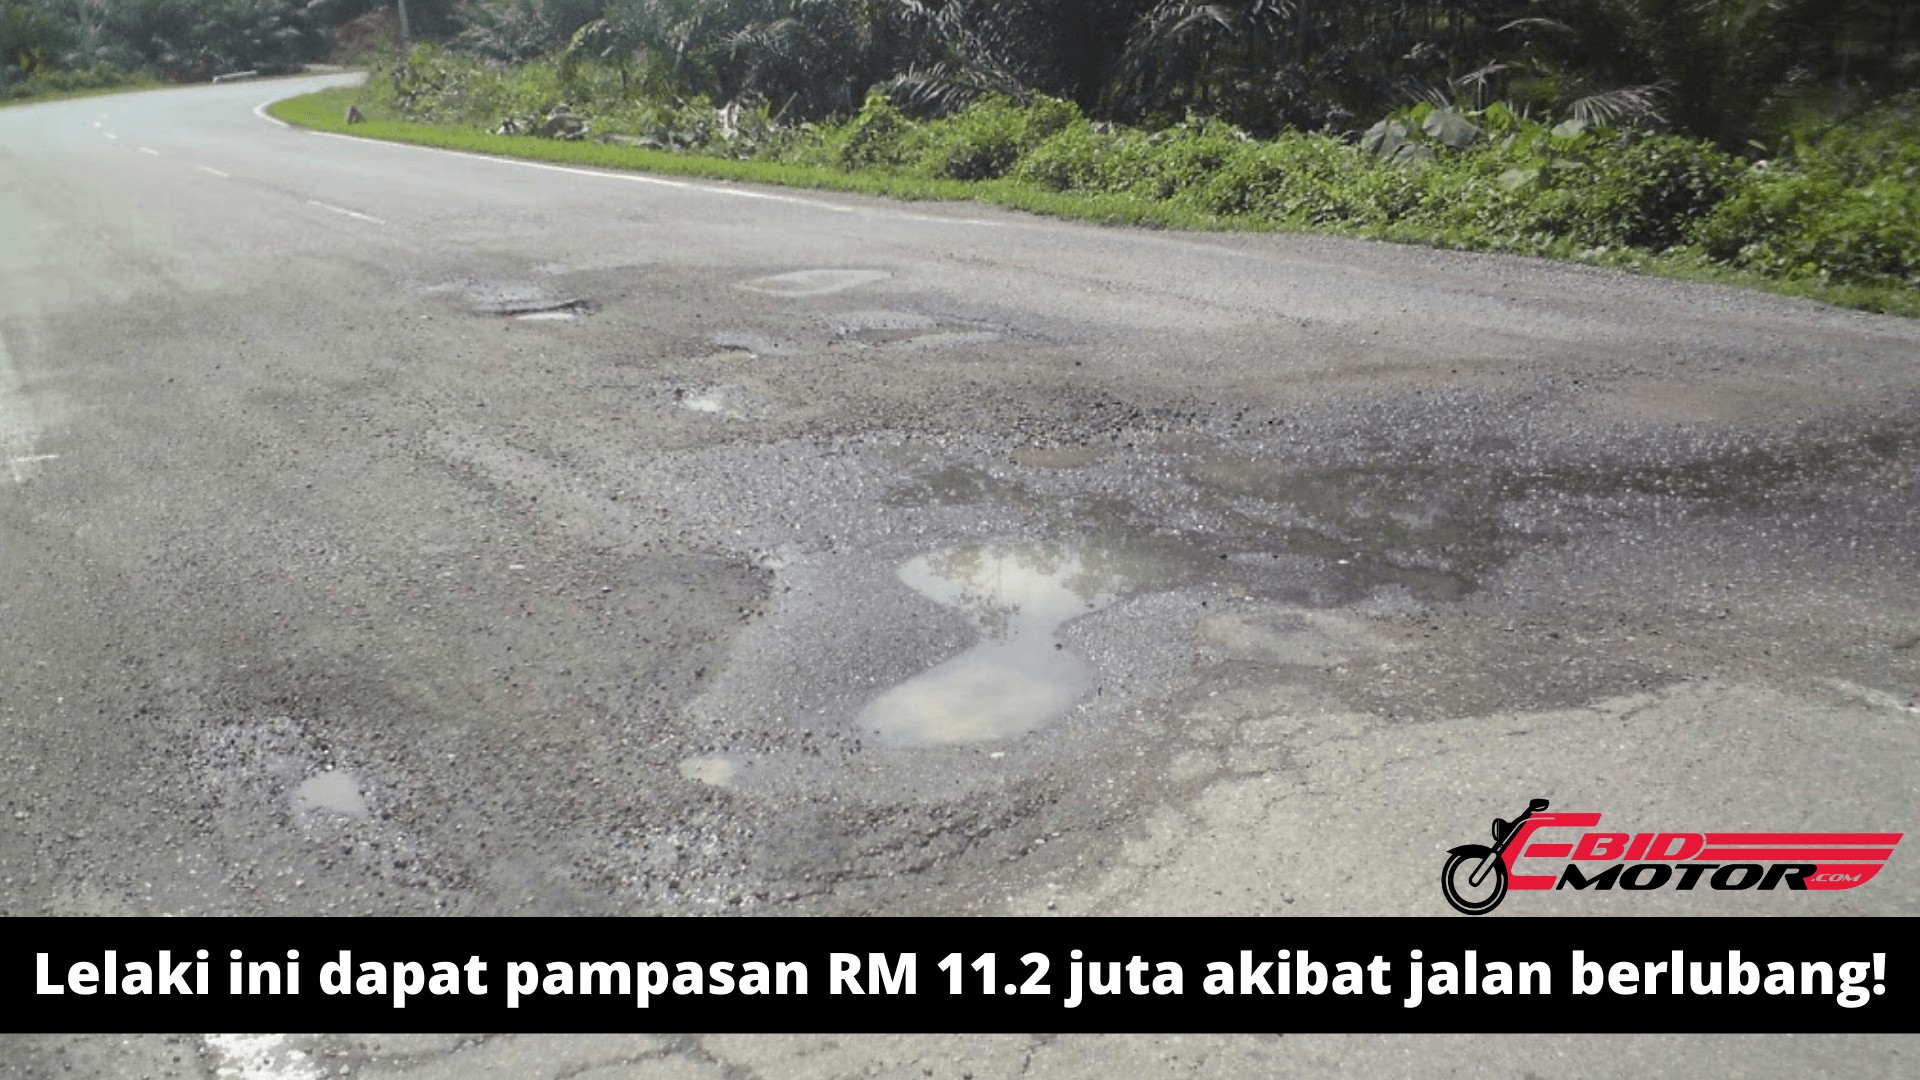 Apa? Pampasan sebanyak RM11.2 juta diberikan kepada lelaki ini yang terlibat dalam kemalangan akibat jalan berlubang?!